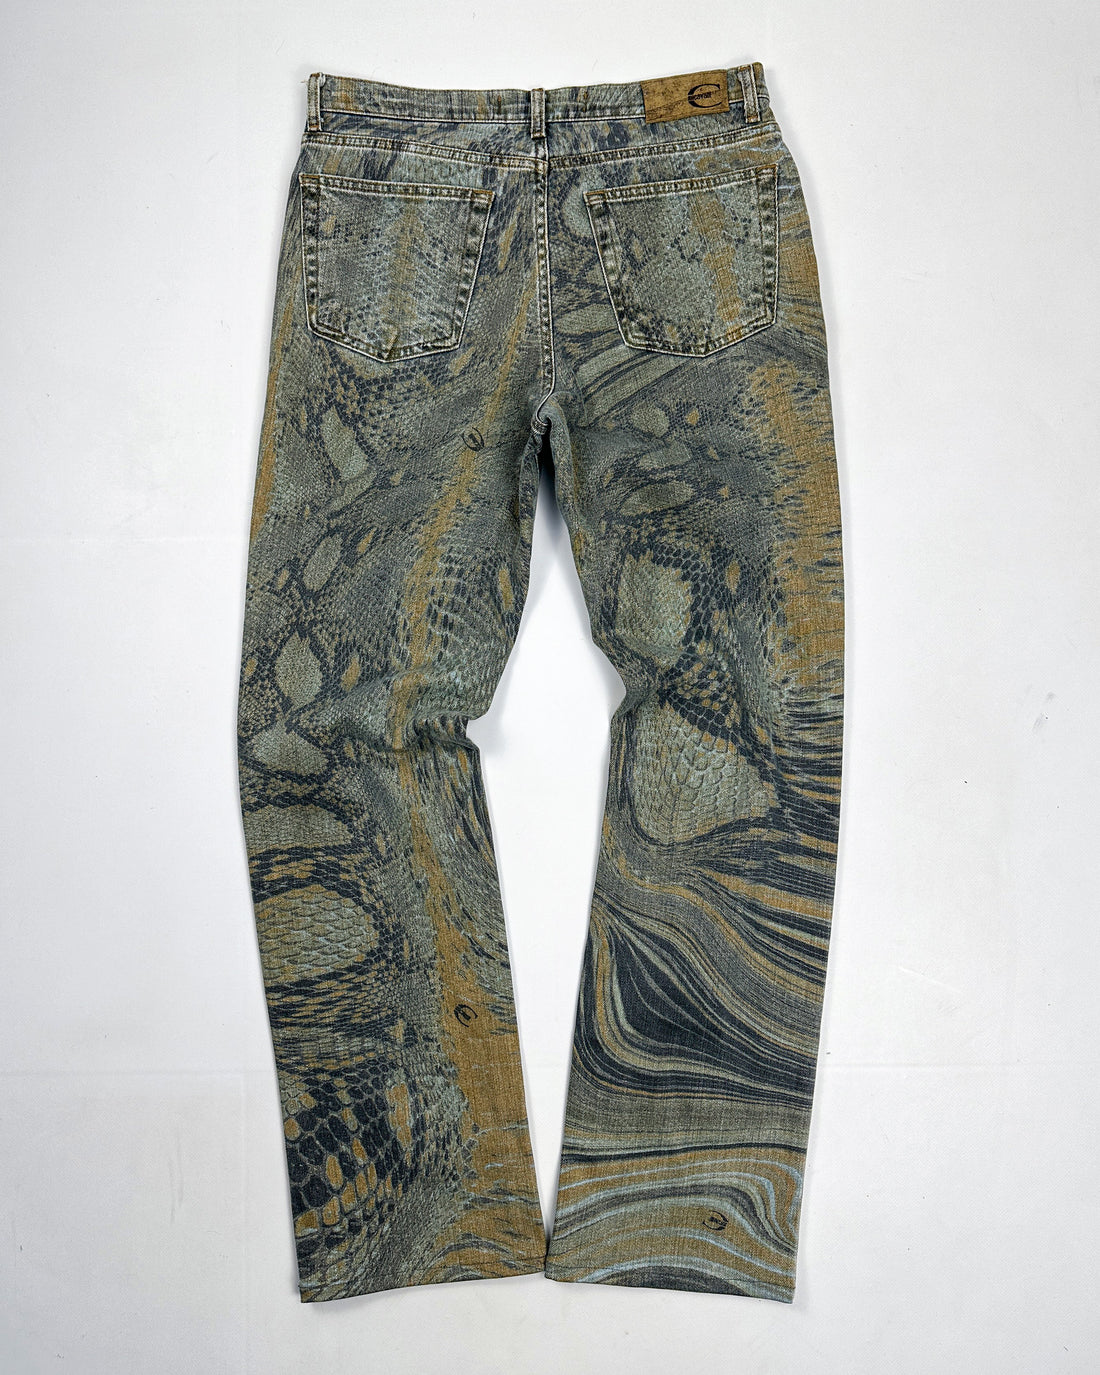 Roberto Cavalli Reptile Print Blue Denim Pants 2000's